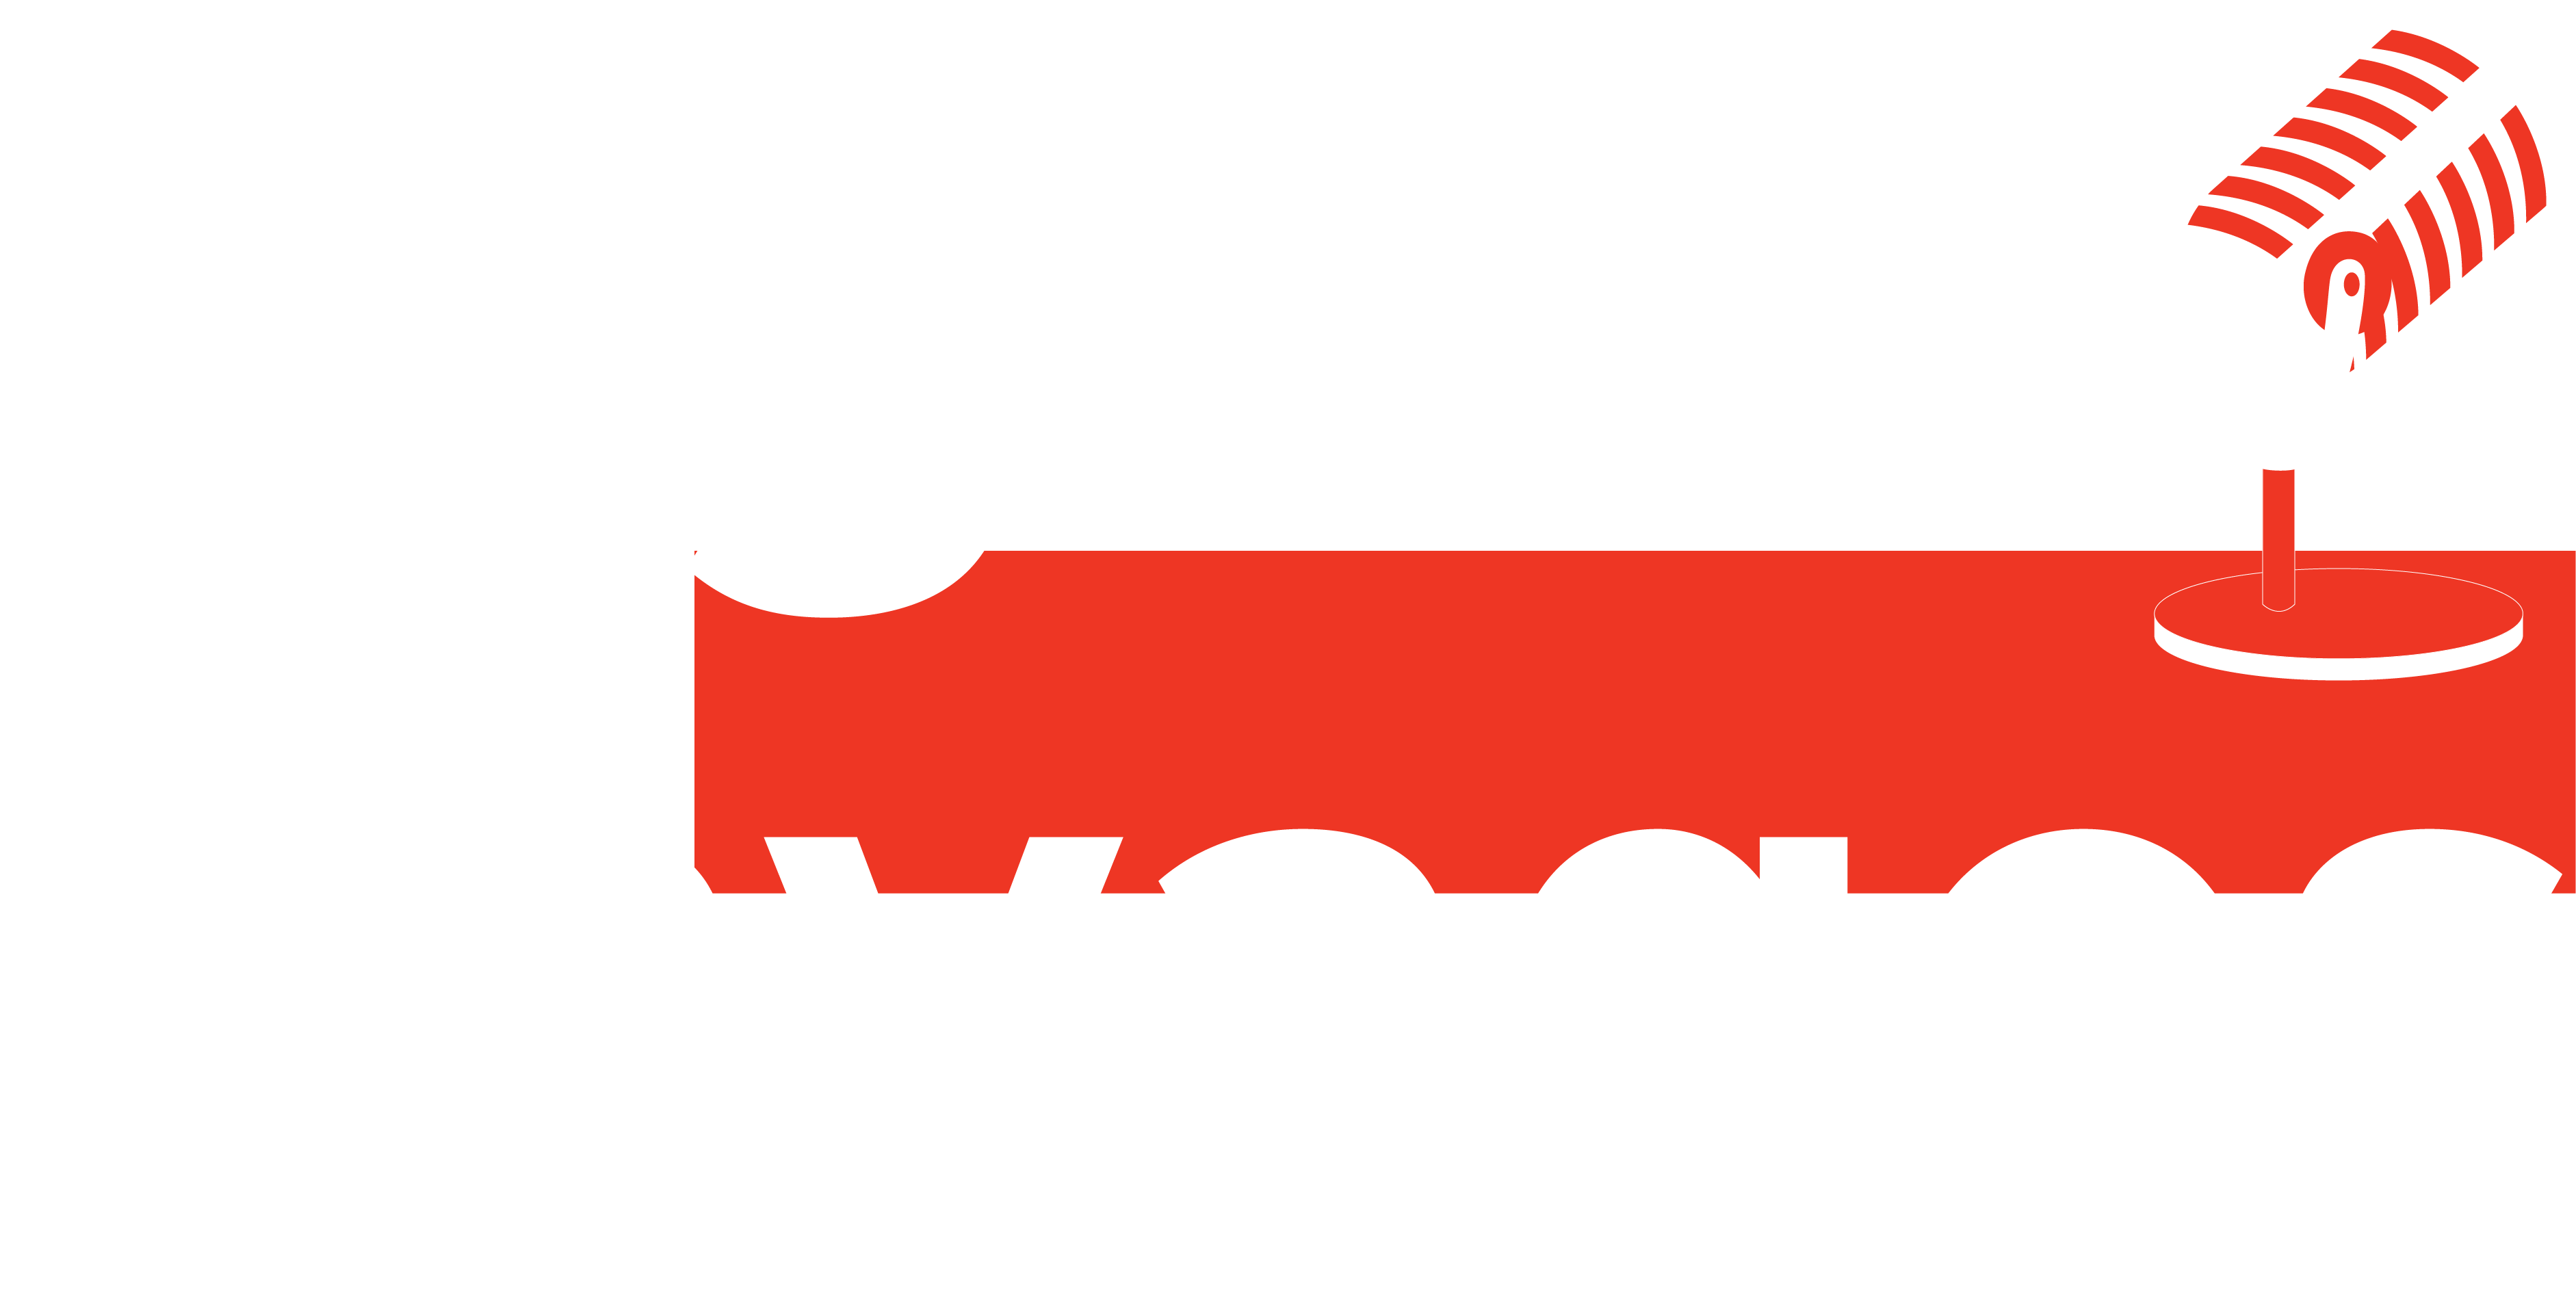 Digital Savages